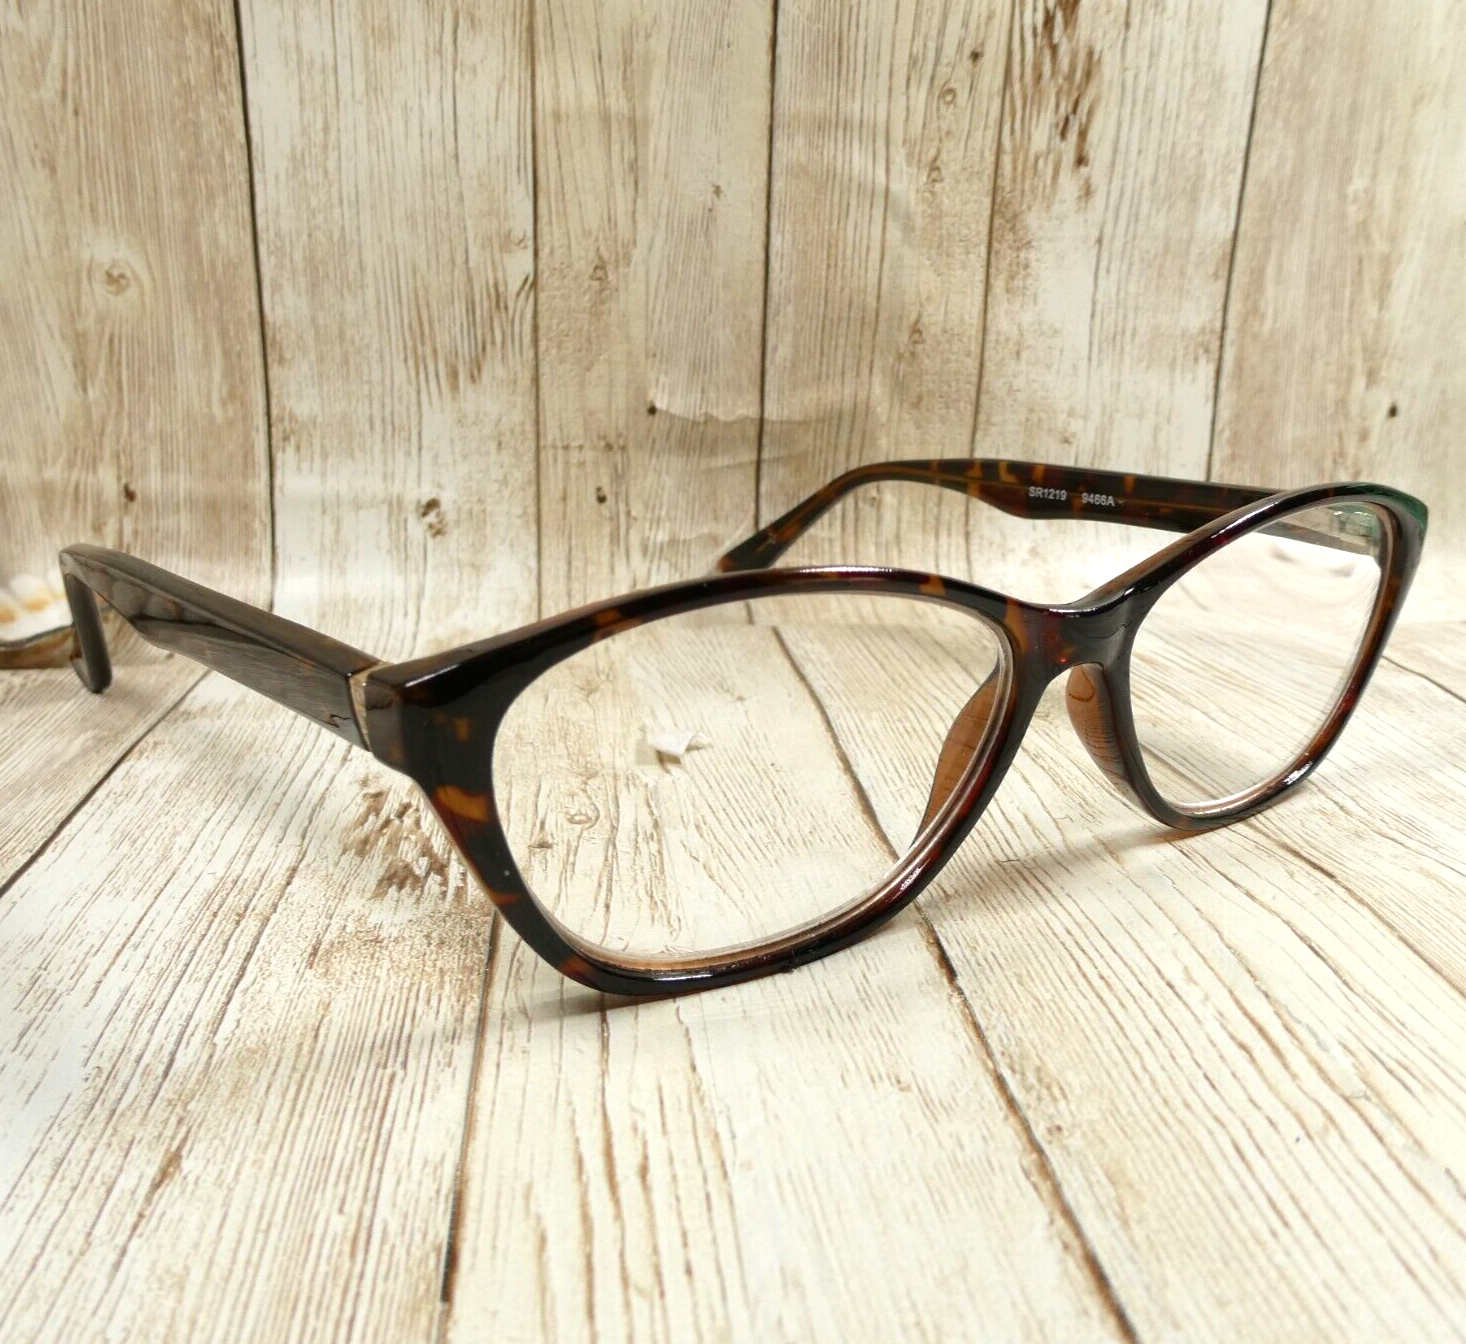 Design Optics by Foster Grant Tortoise Eyeglasses FRAMES ONLY SR1219 53-15-140 - $23.71